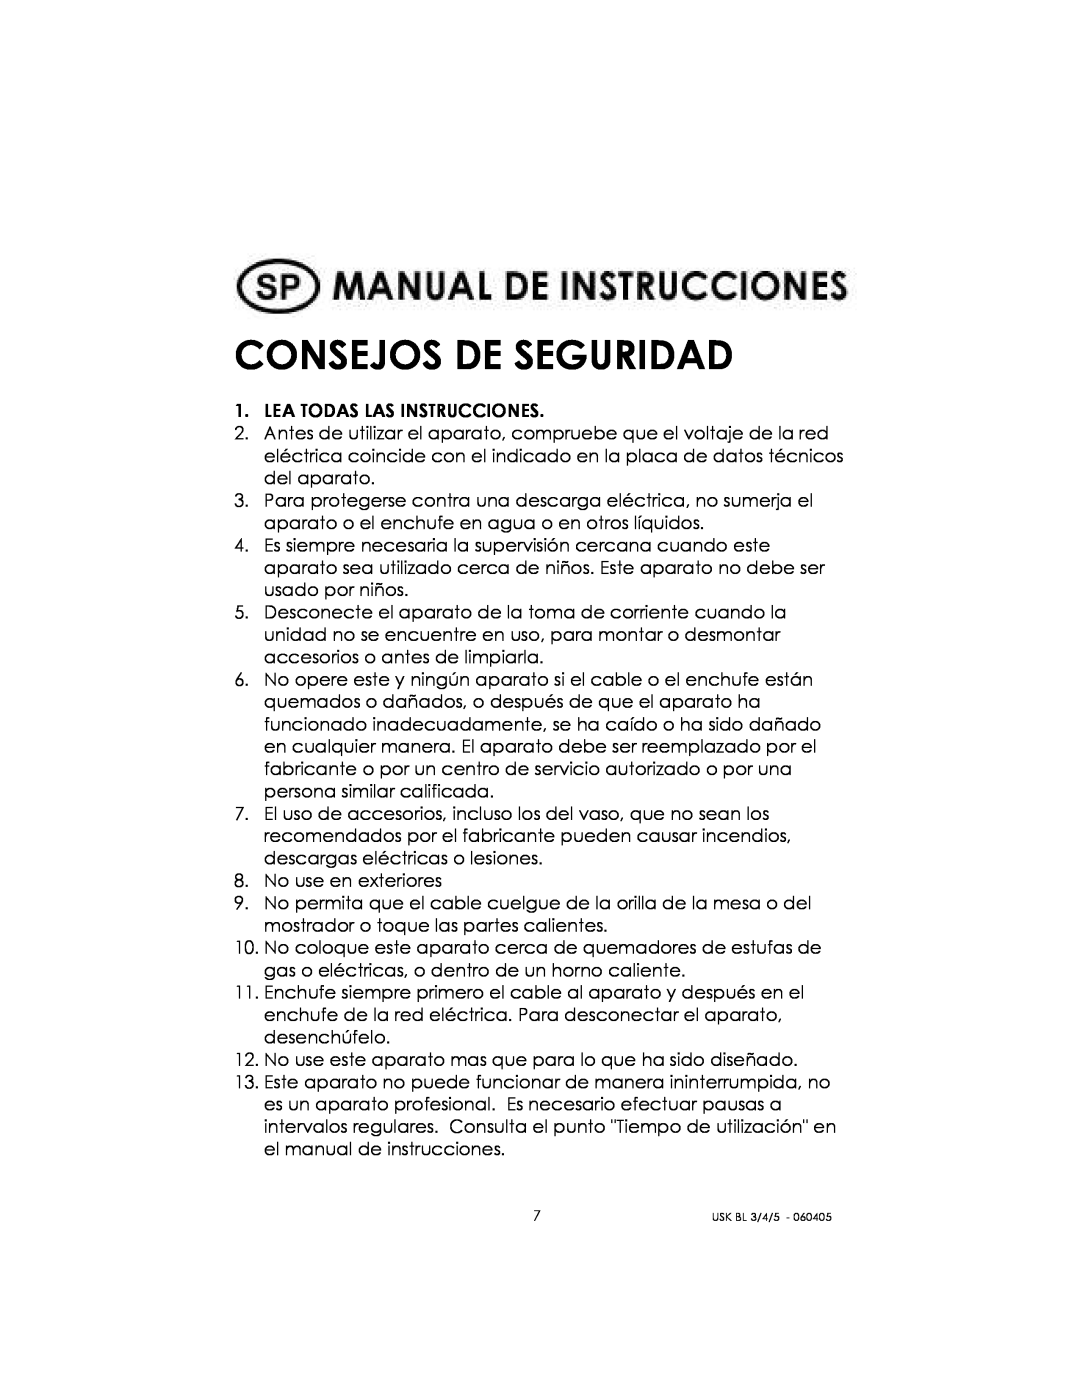 Kalorik USK BL 3/4/5 manual Consejos De Seguridad 